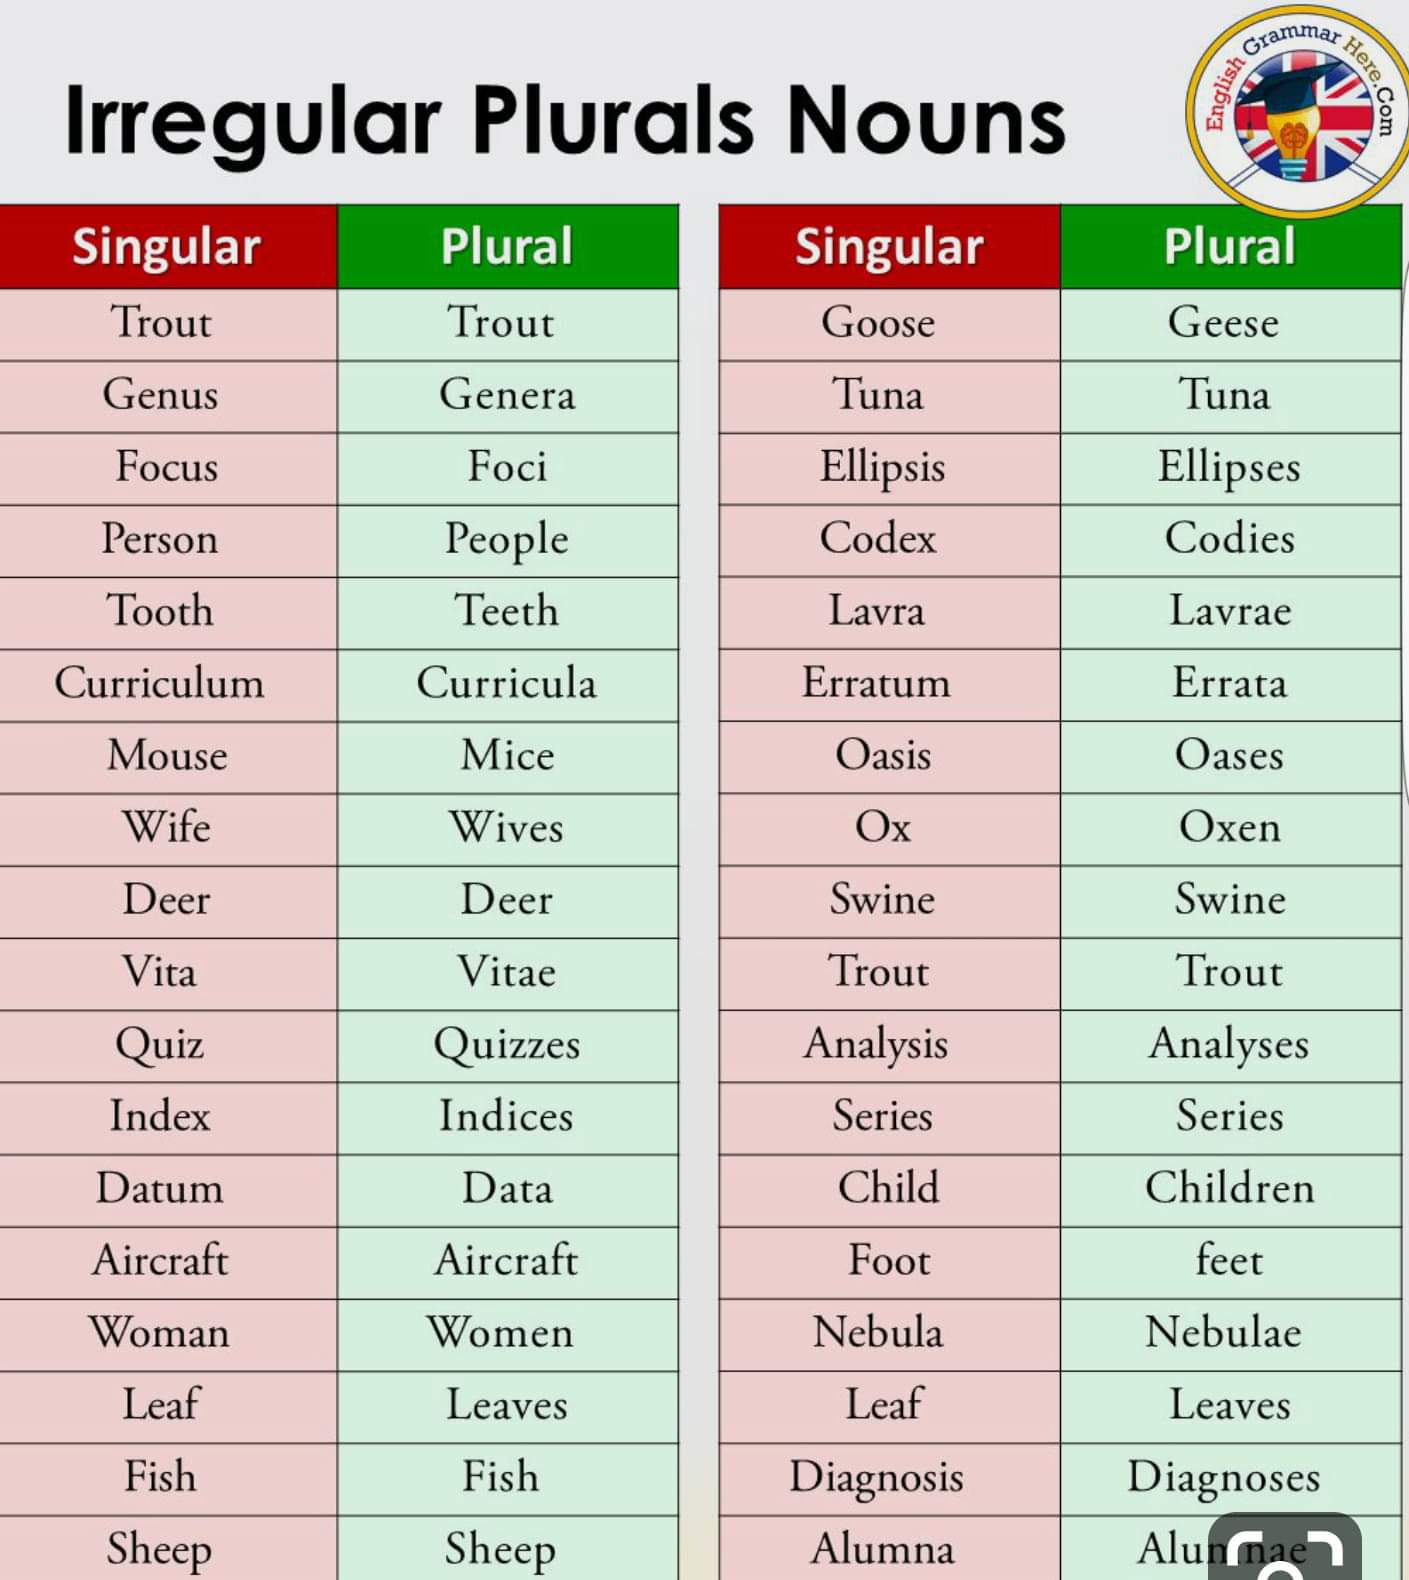 Plural nouns words. Что такое singular и plural а английском языке. Irregular plurals in English. Irregular plurals в английском языке. Irregular plurals таблица.